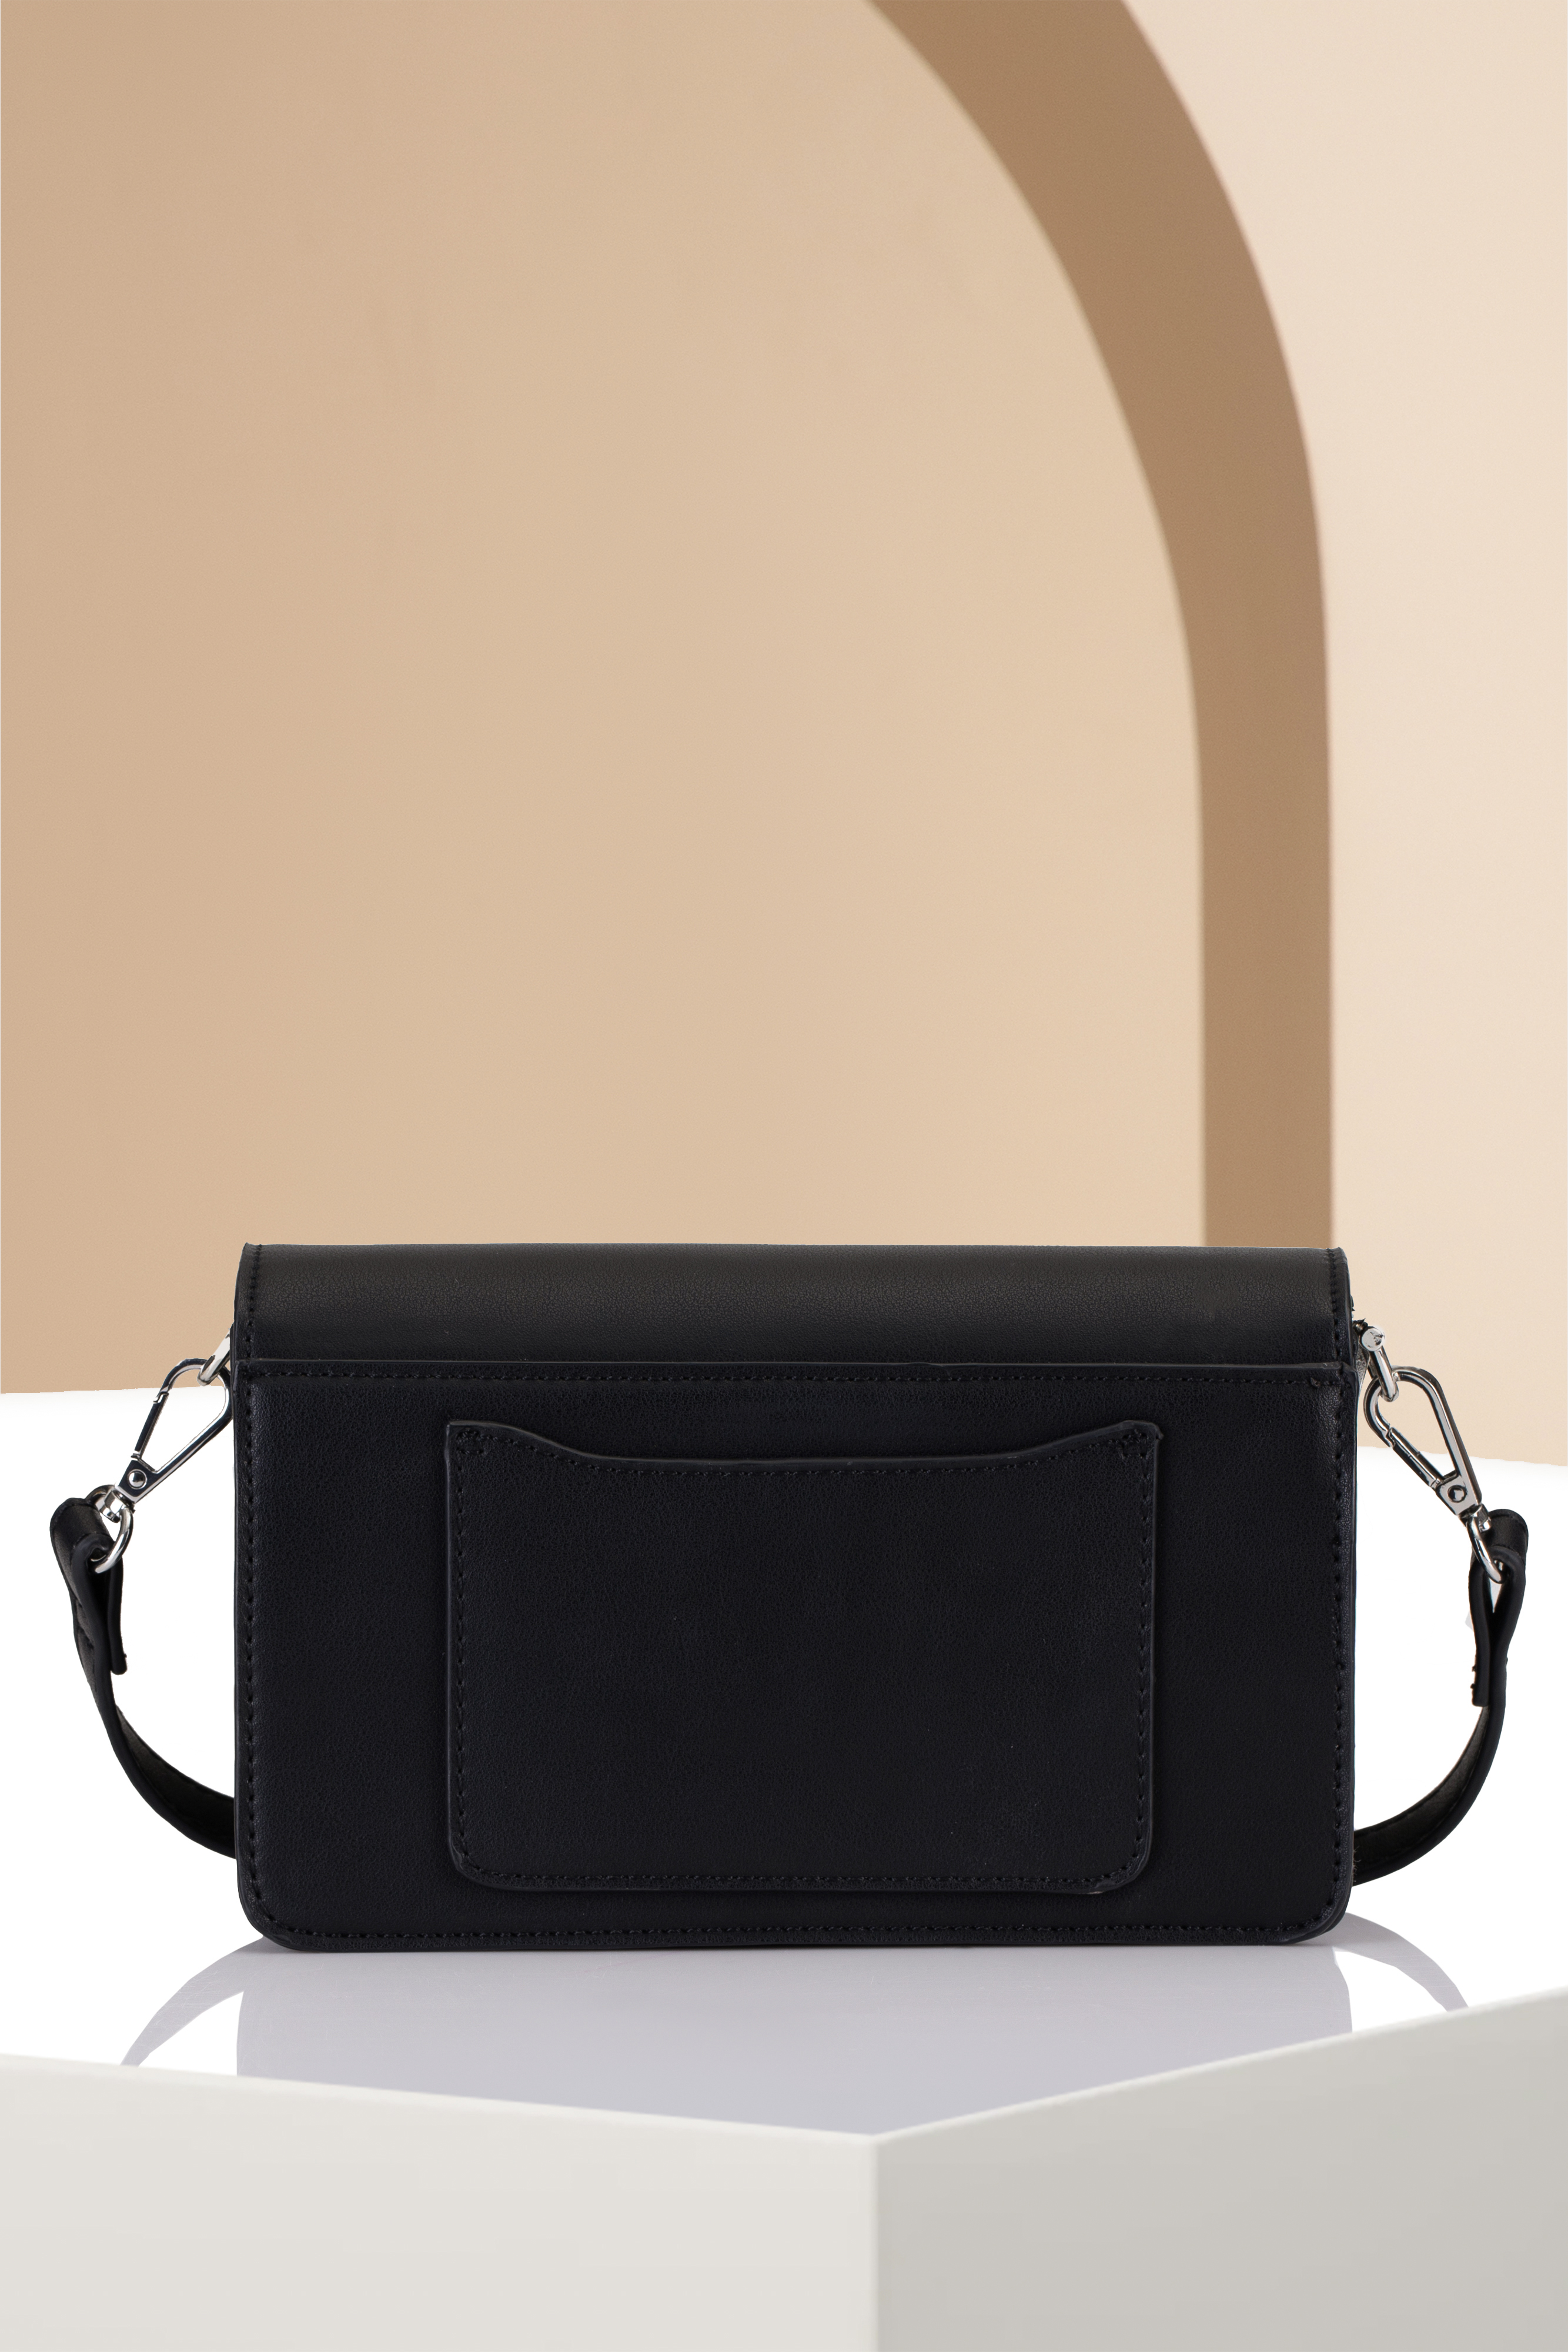 Louiz&Lou Überschlagtasche Umhängetasche Lara mit Kette in schwarz - 2840-60